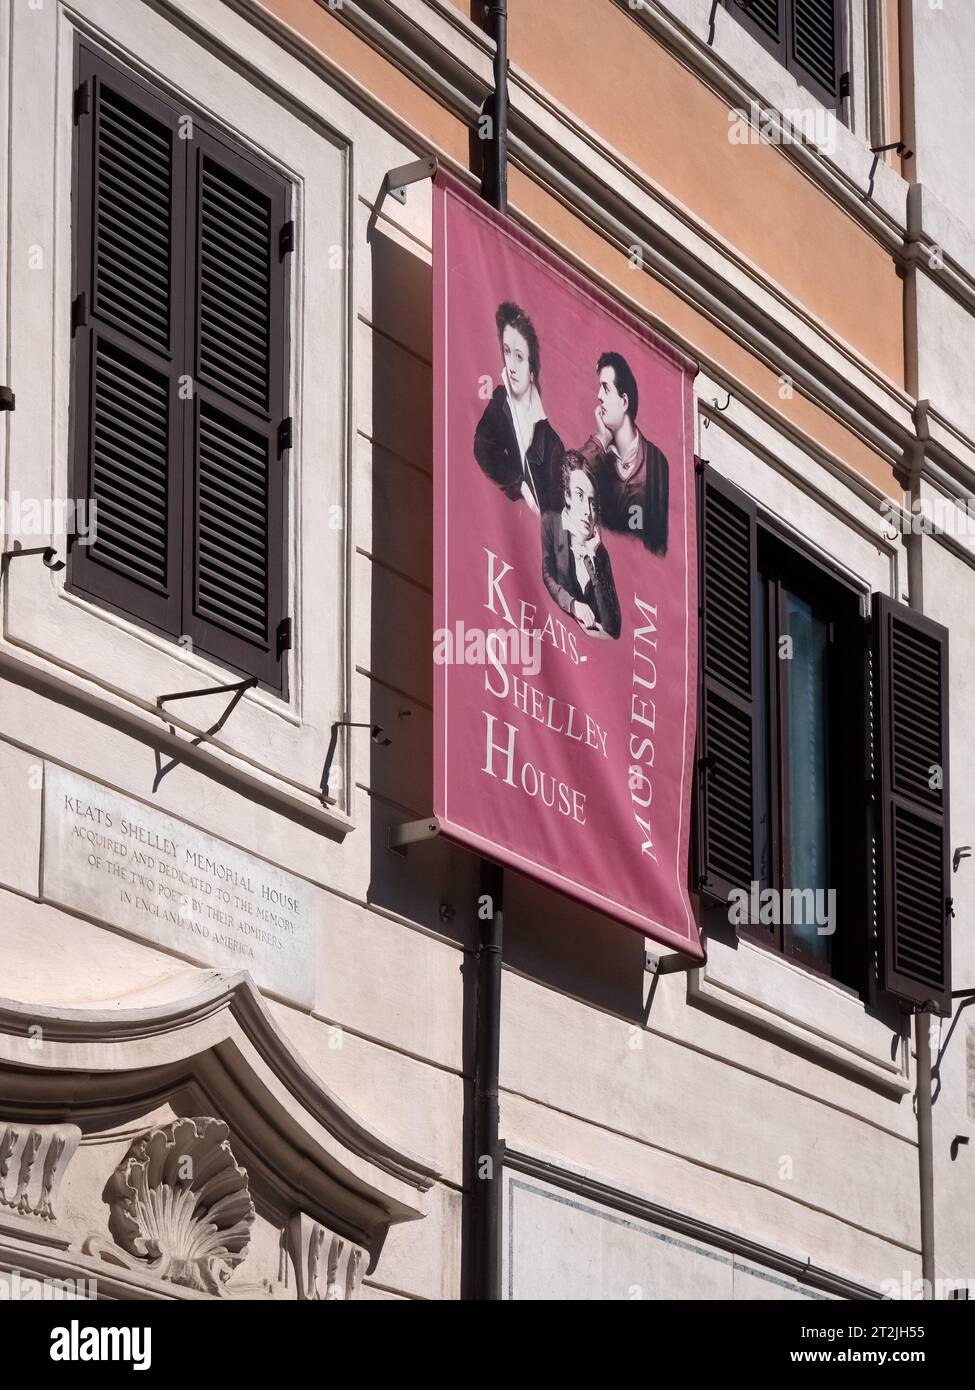 ROM, ITALIEN - 07. SEPTEMBER 2023 Außenansicht des Keats-Shelley House Museums auf dem Spanischen Platz (Piazza di Spagna) mit Bannerschild Stockfoto